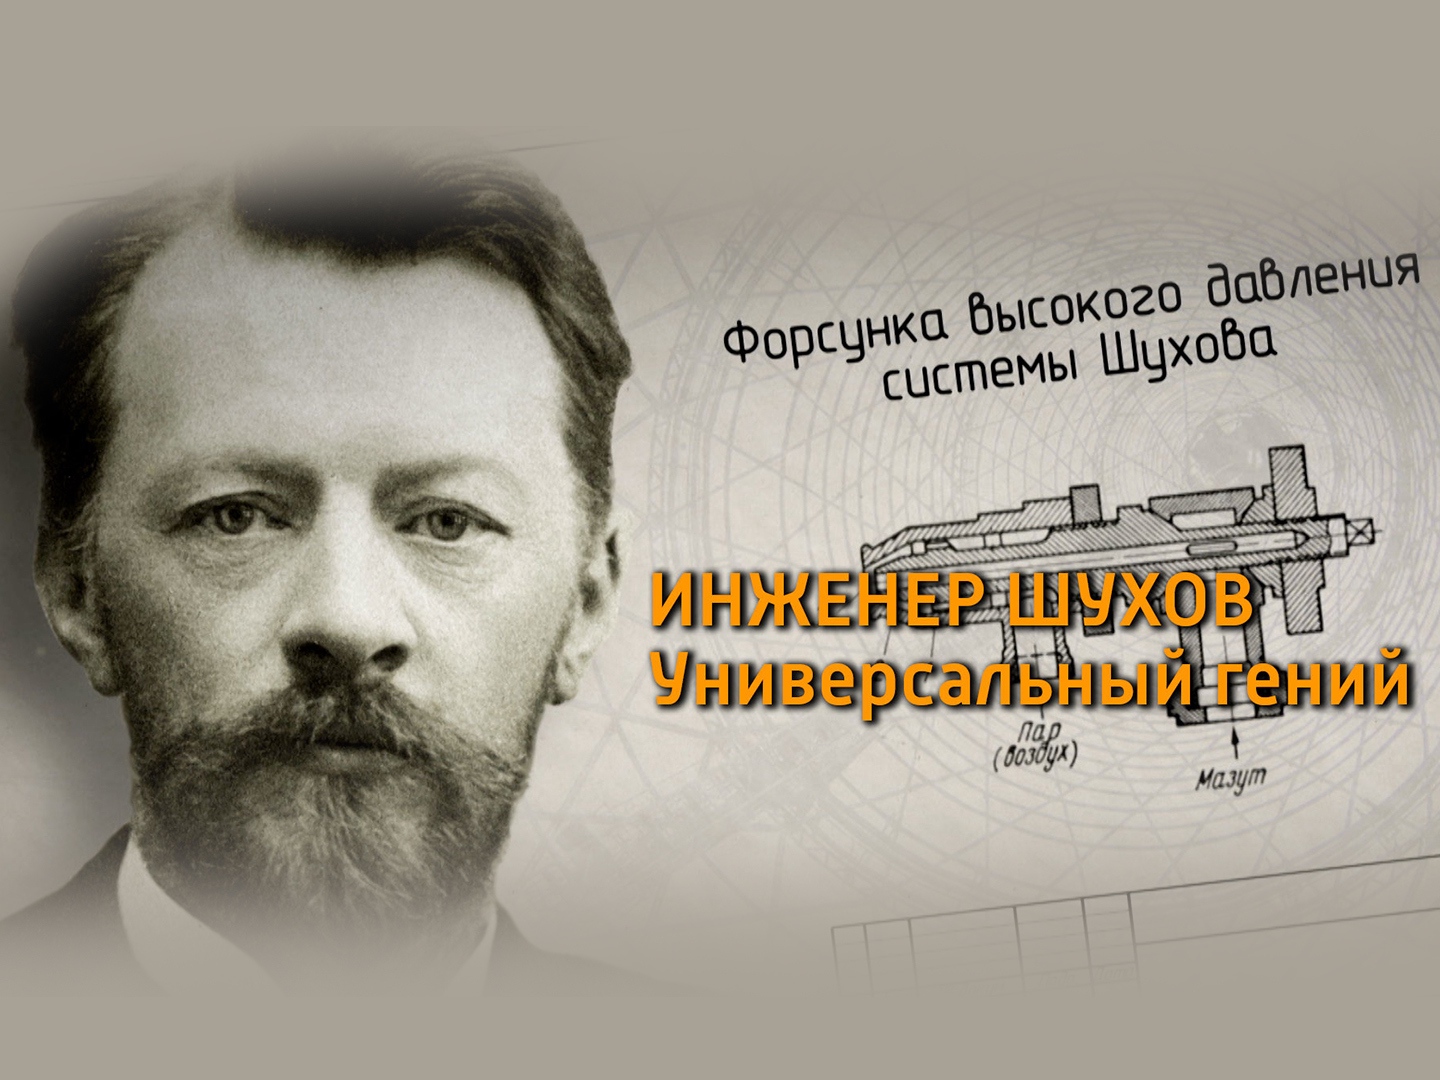 Он родился в хх веке. Русским инженером Владимиром Шуховым.